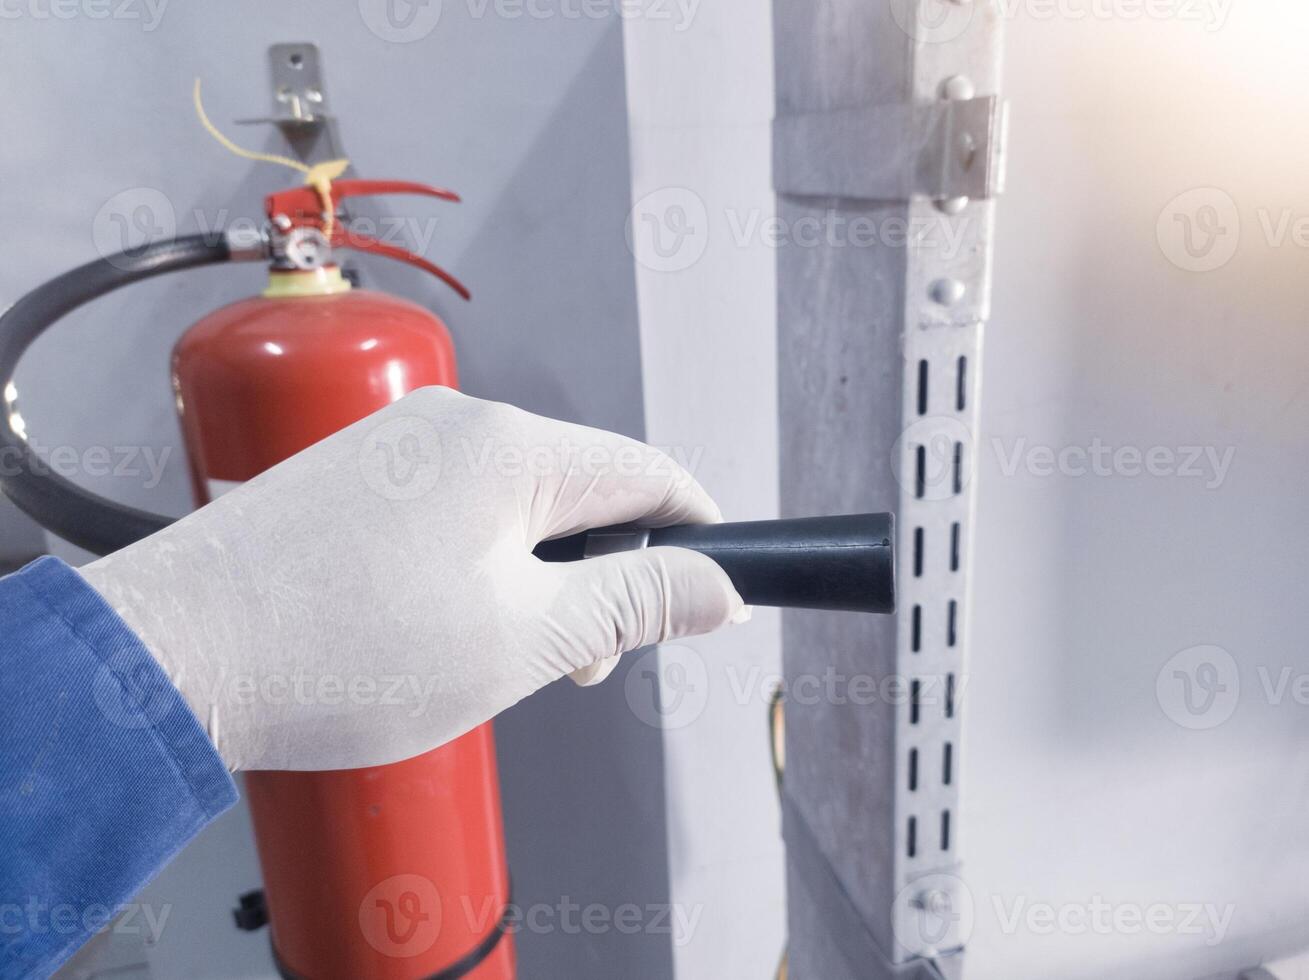 cheque y inspección el boquilla válvula fuego extintor, condición polvo en el tubo fuego extintor. foto